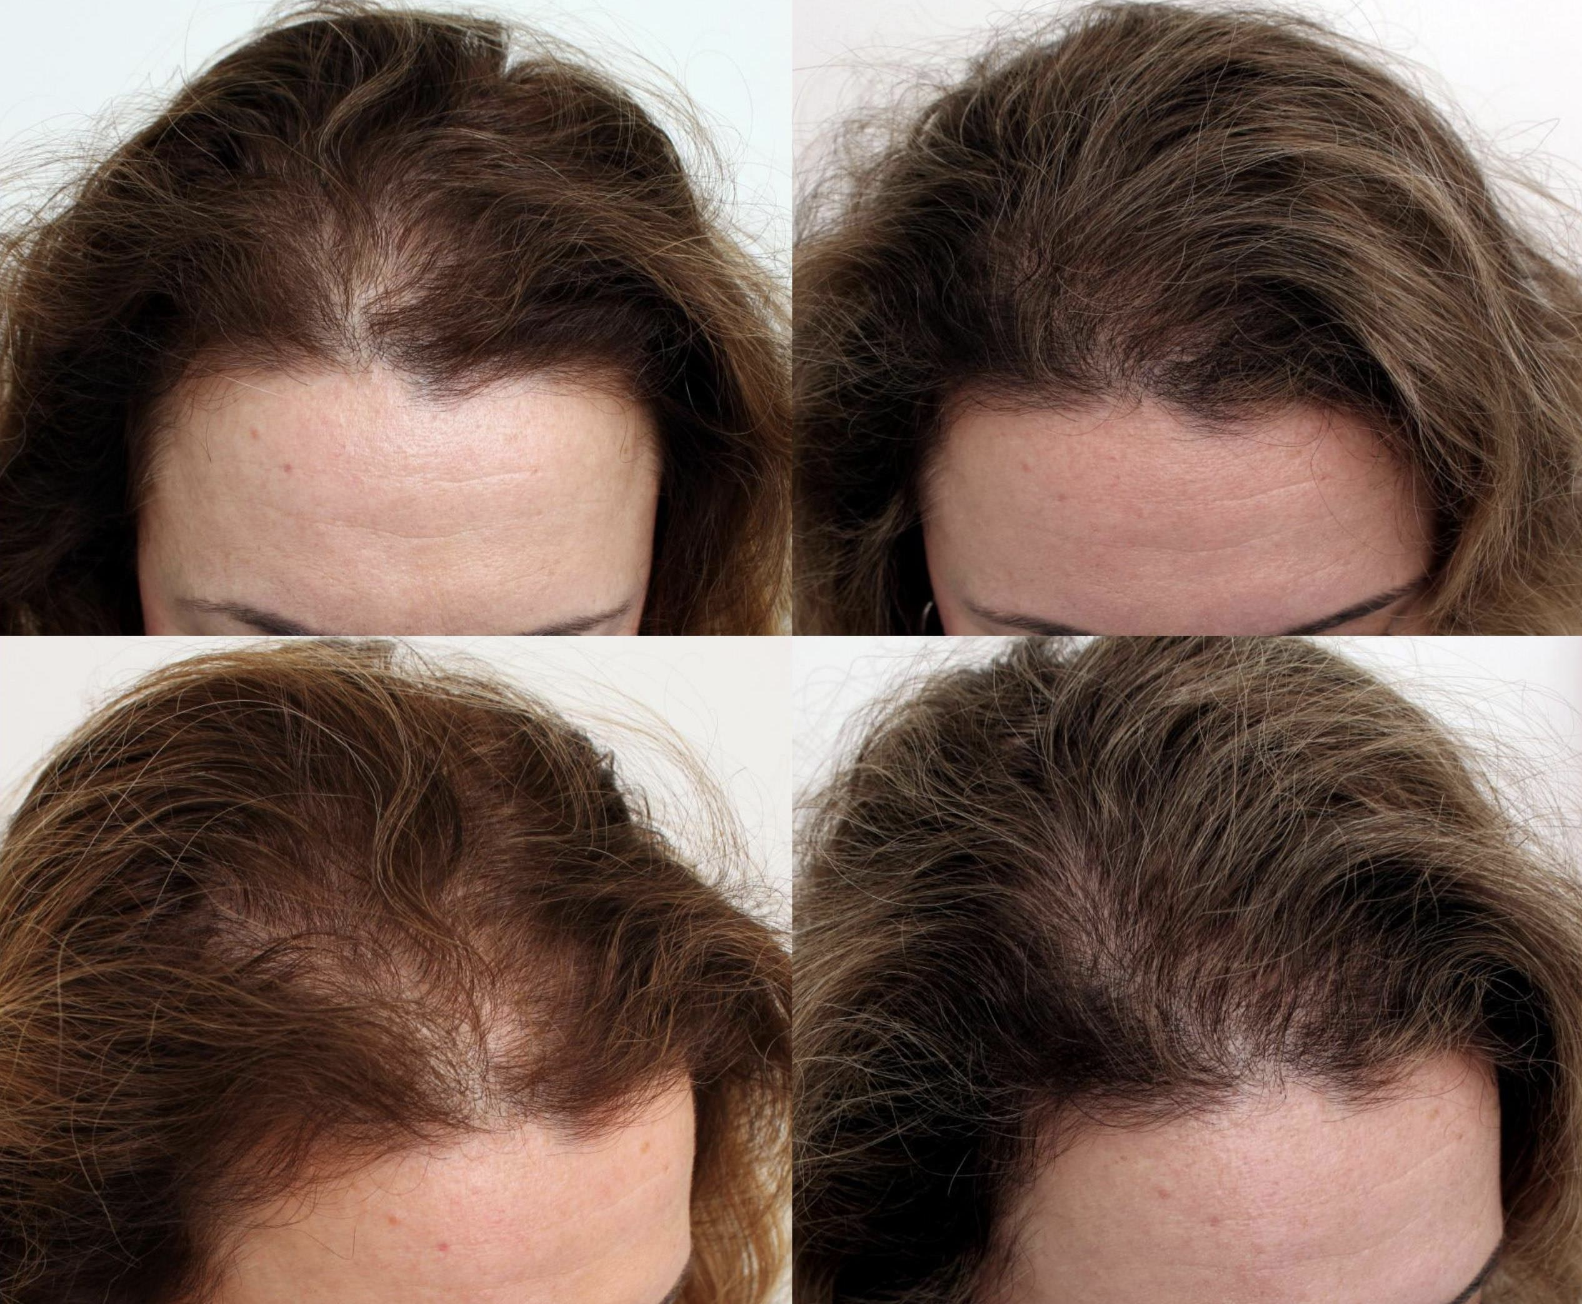 Results at The Hair Loss Doctors | New York,  NY